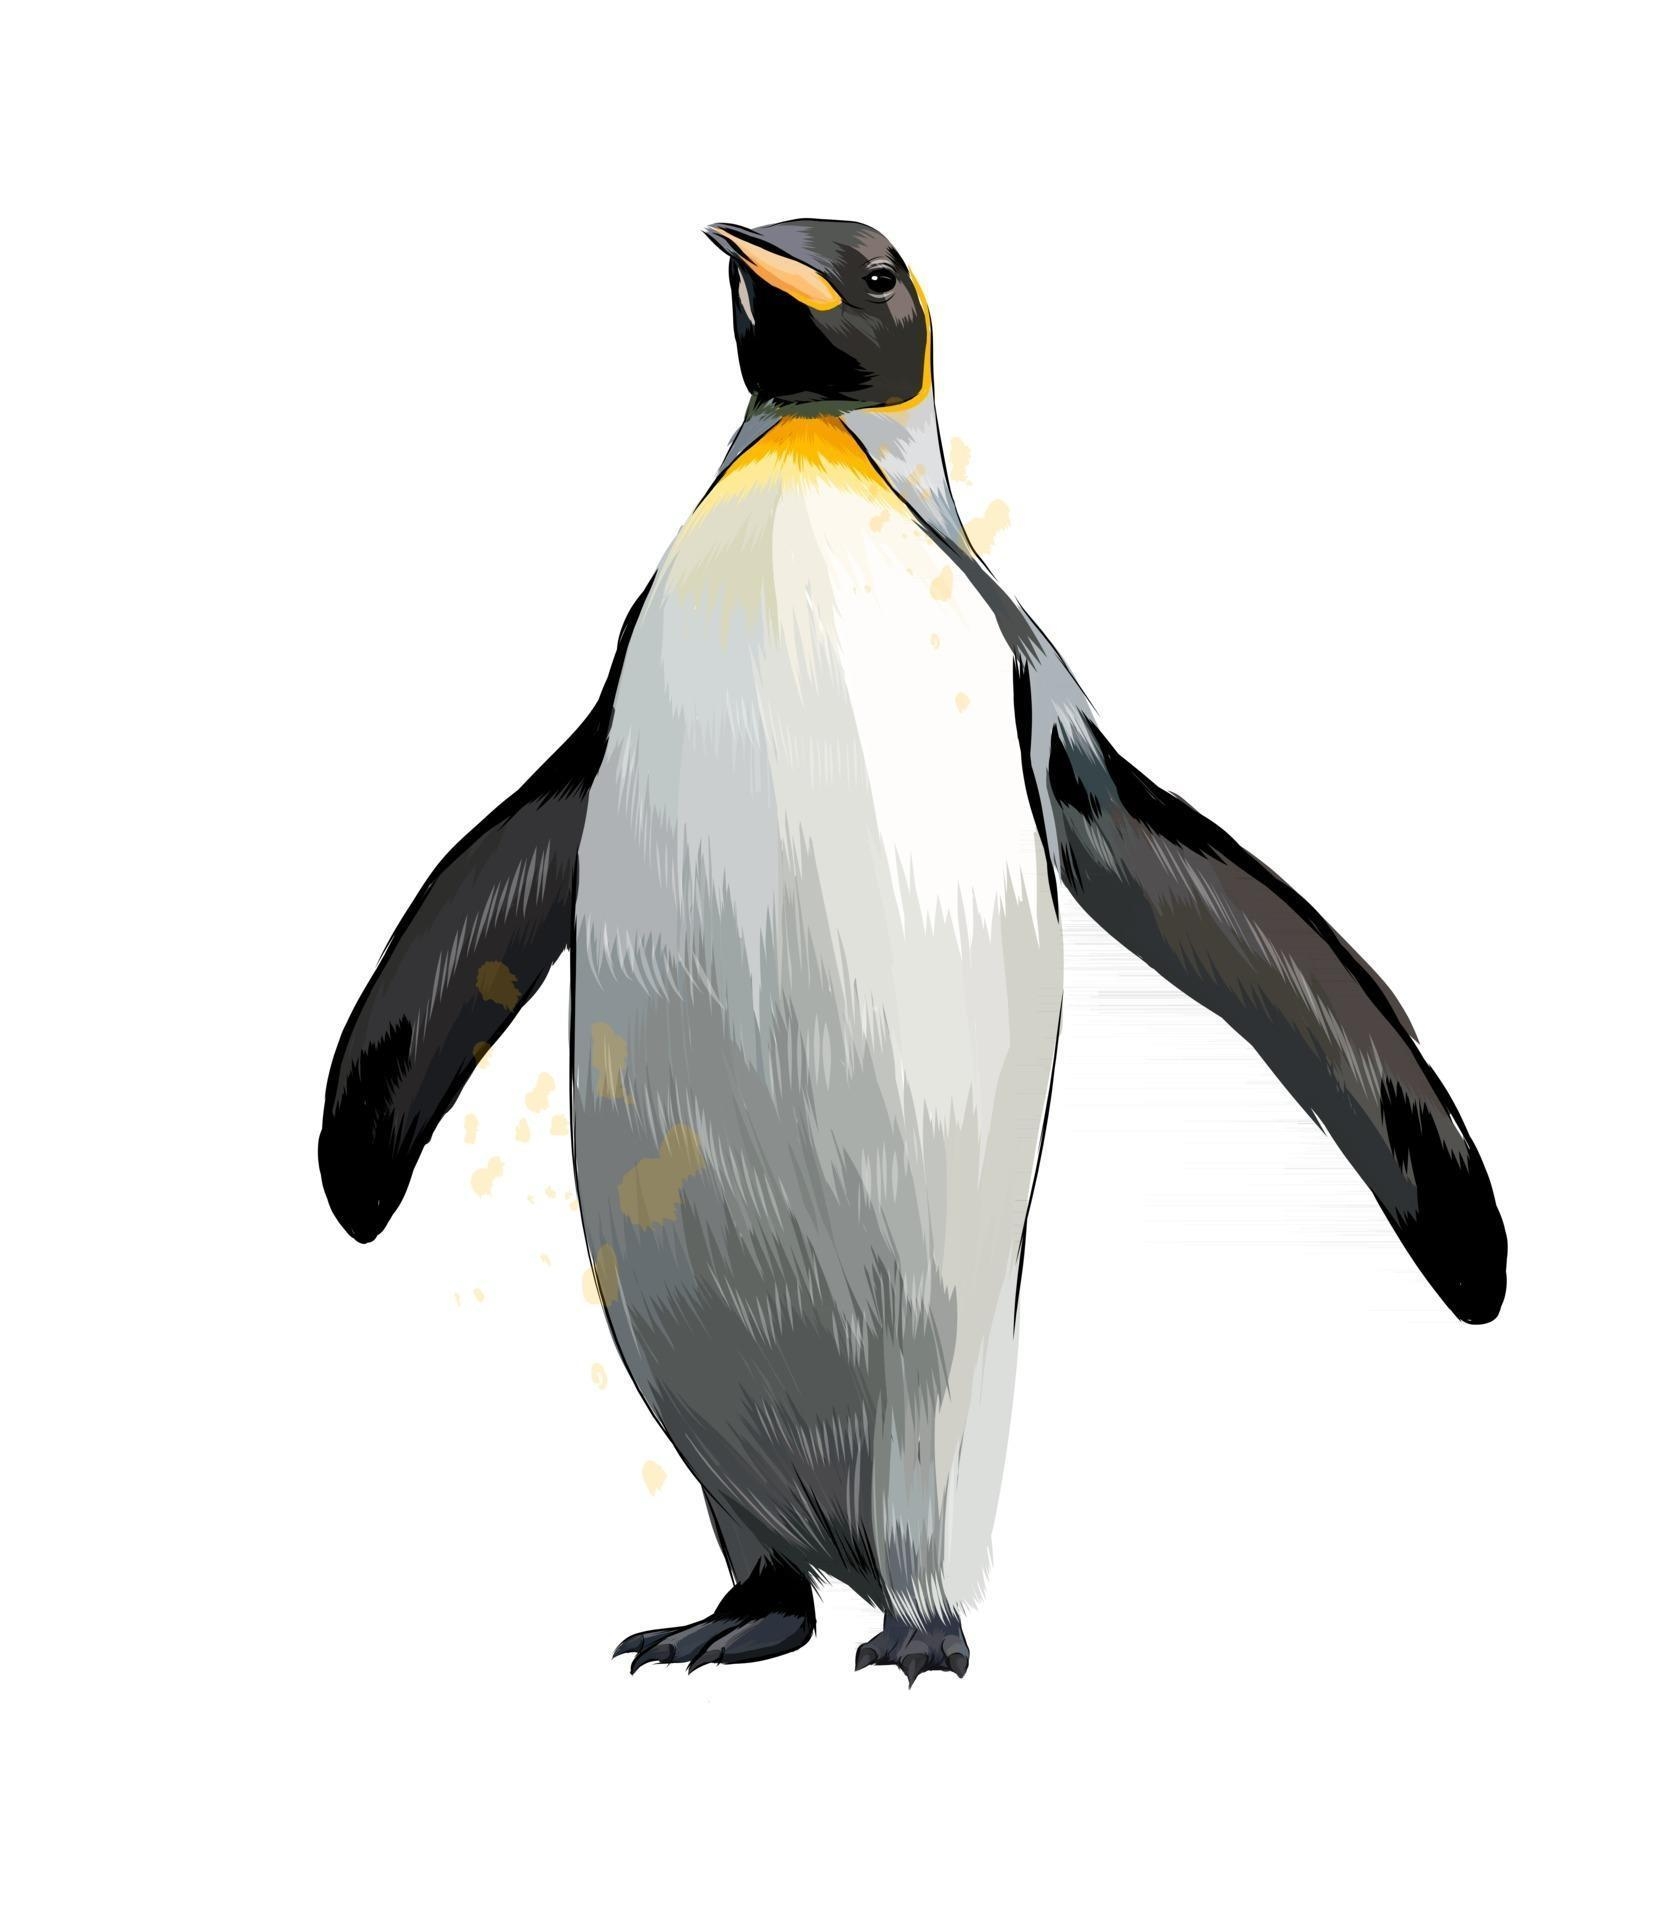 Пингвины. Рисунки для медитаций